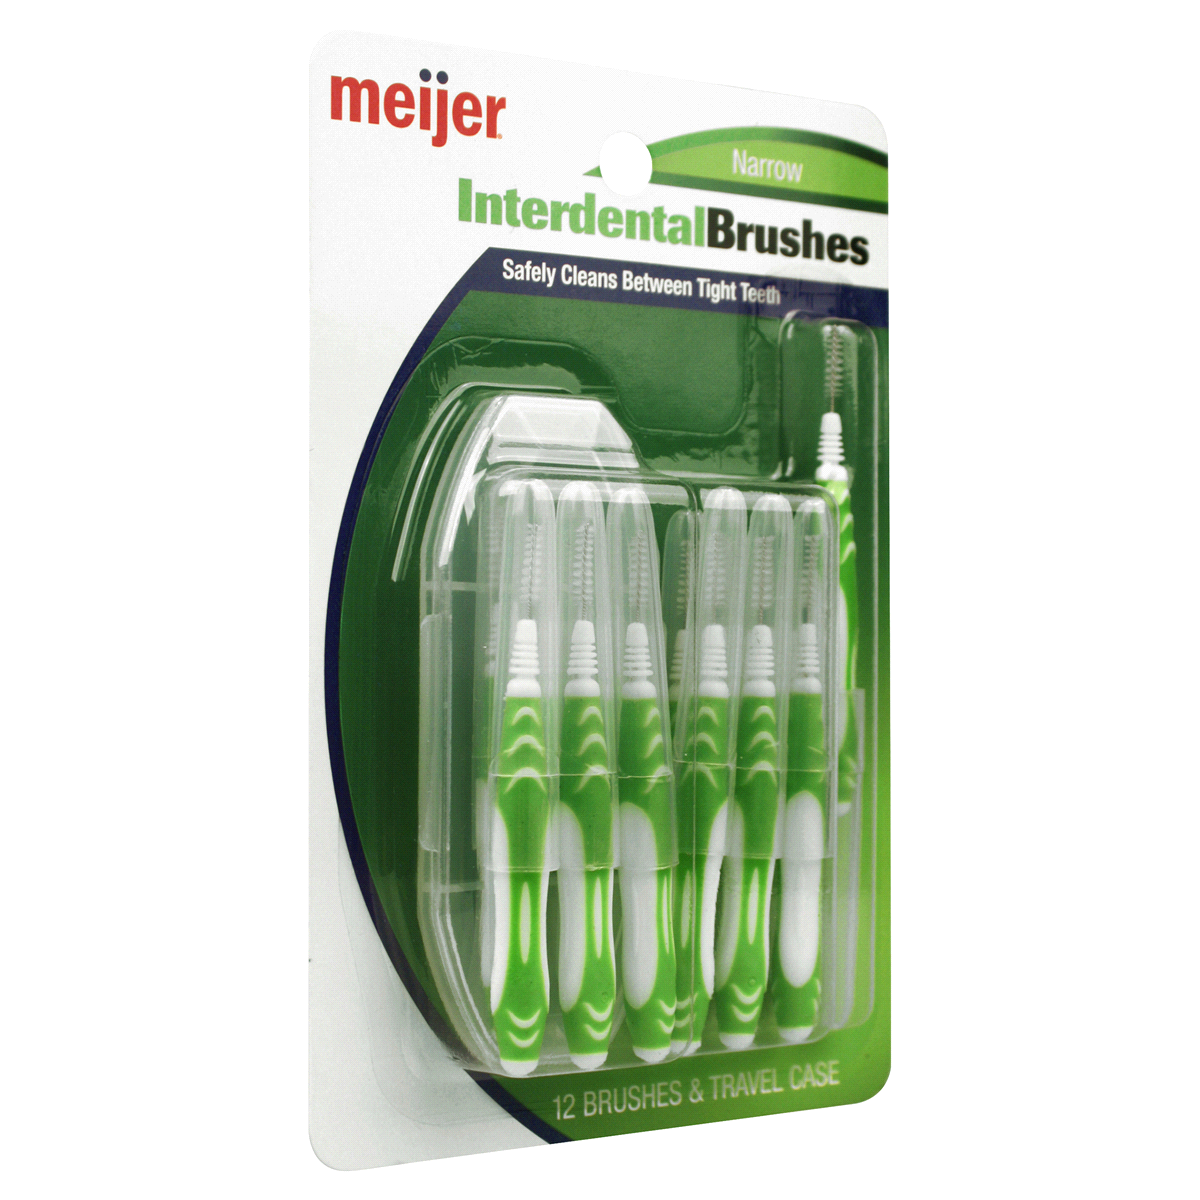 slide 2 of 3, Meijer Interdental Brushes, Narrow, 12 ct